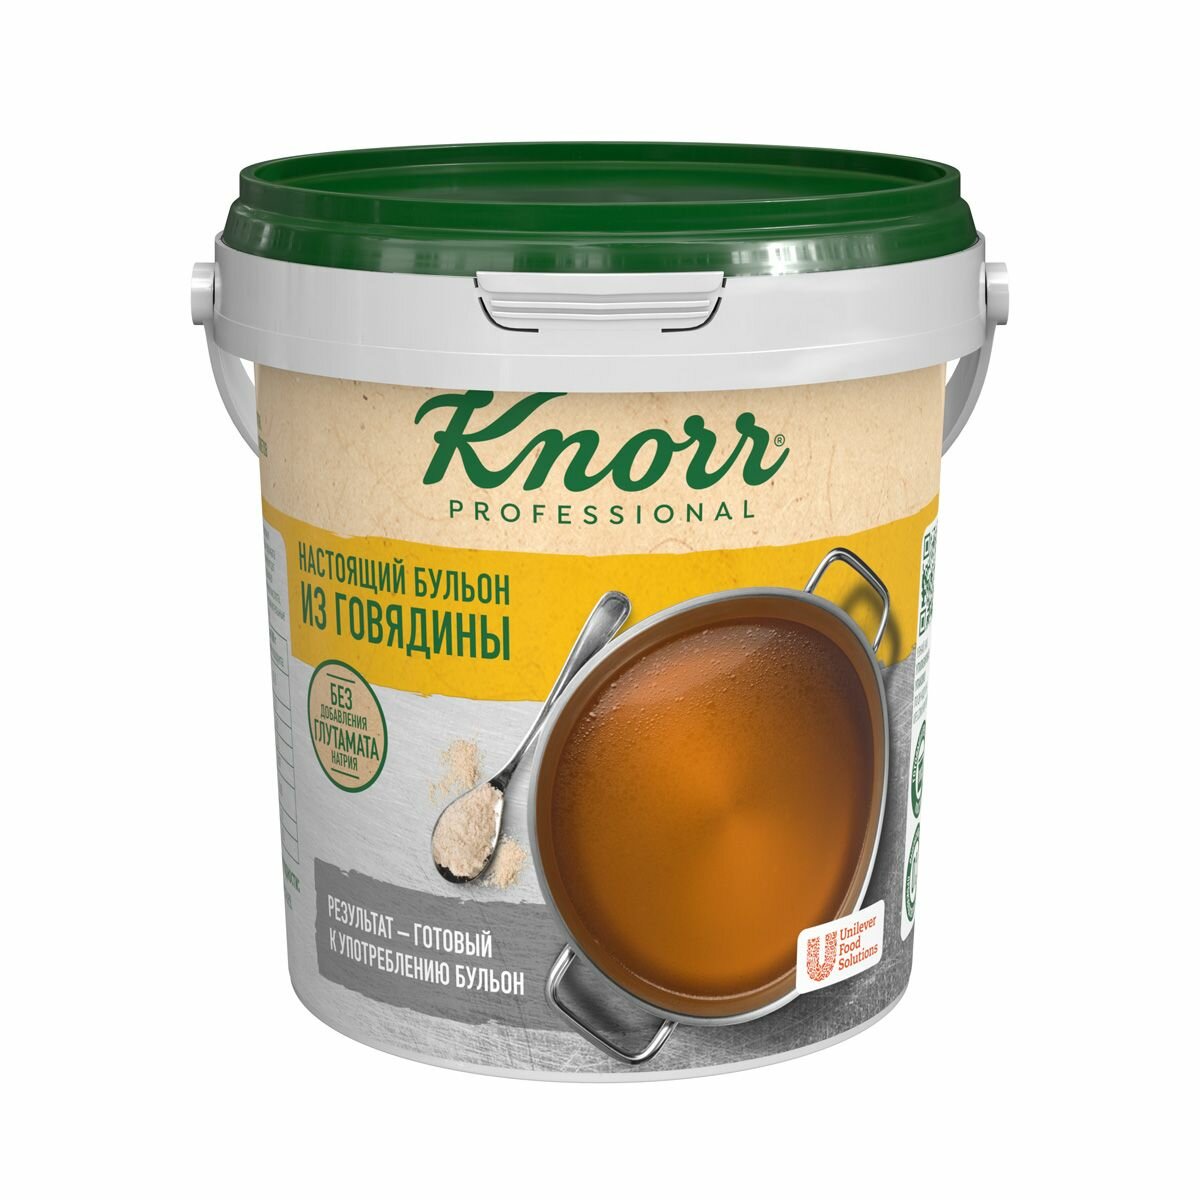 Бульон настоящий говяжий 800 г Knorr professional сухая смесь, 1 шт